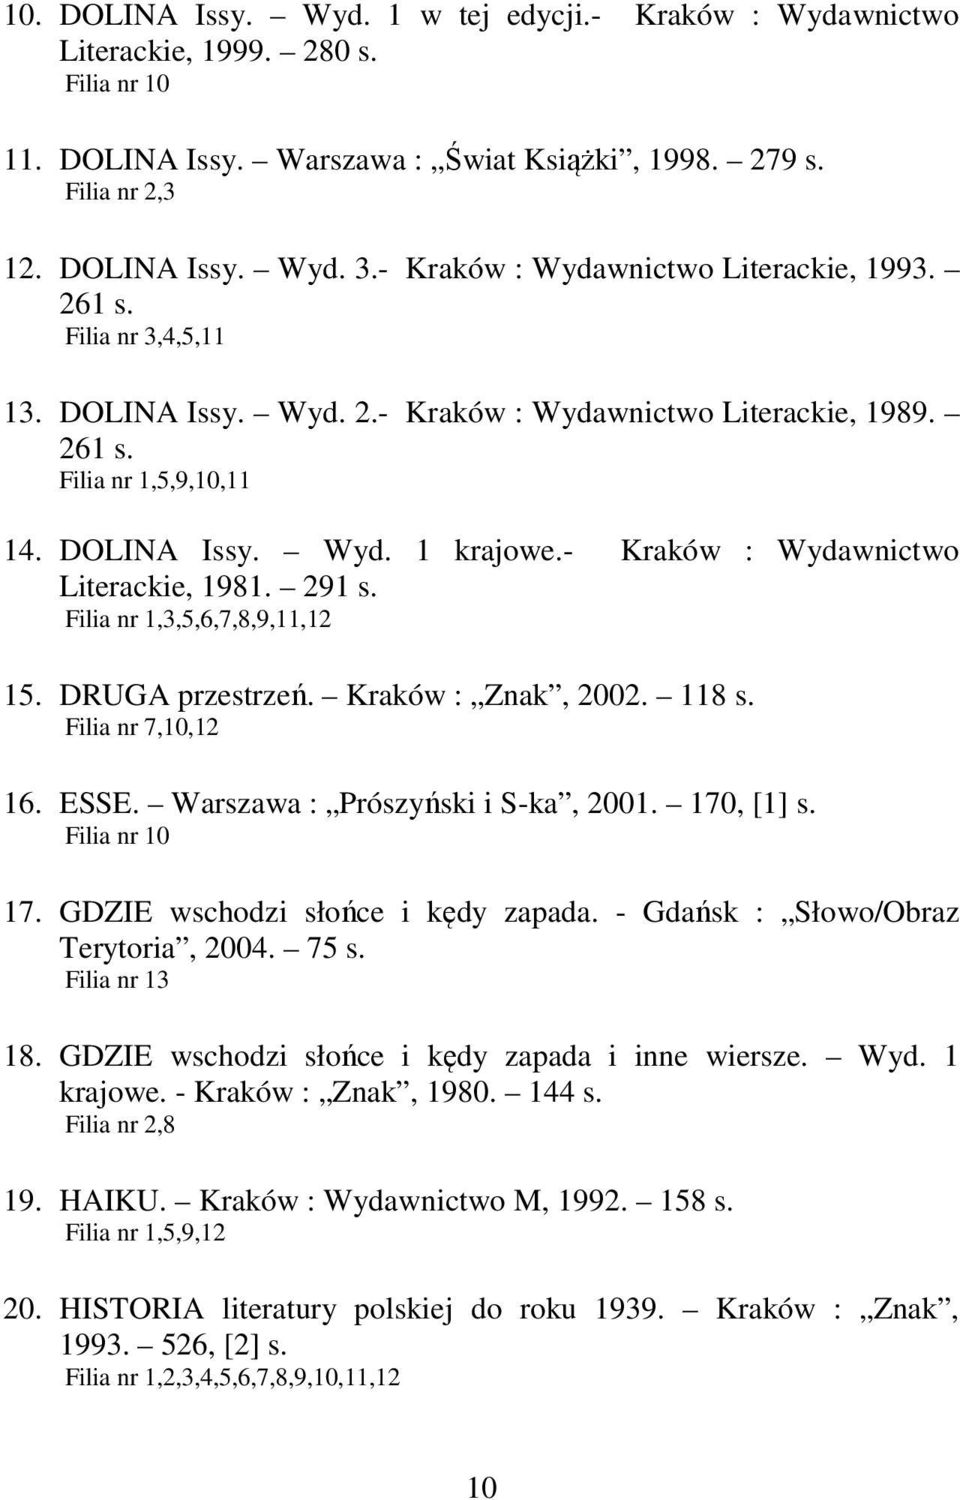 - Kraków : Wydawnictwo Literackie, 1981. 291 s. Filia nr 1,3,5,6,7,8,9,11,12 15. DRUGA przestrzeń. Kraków : Znak, 2002. 118 s. Filia nr 7,10,12 16. ESSE. Warszawa : Prószyński i S-ka, 2001.